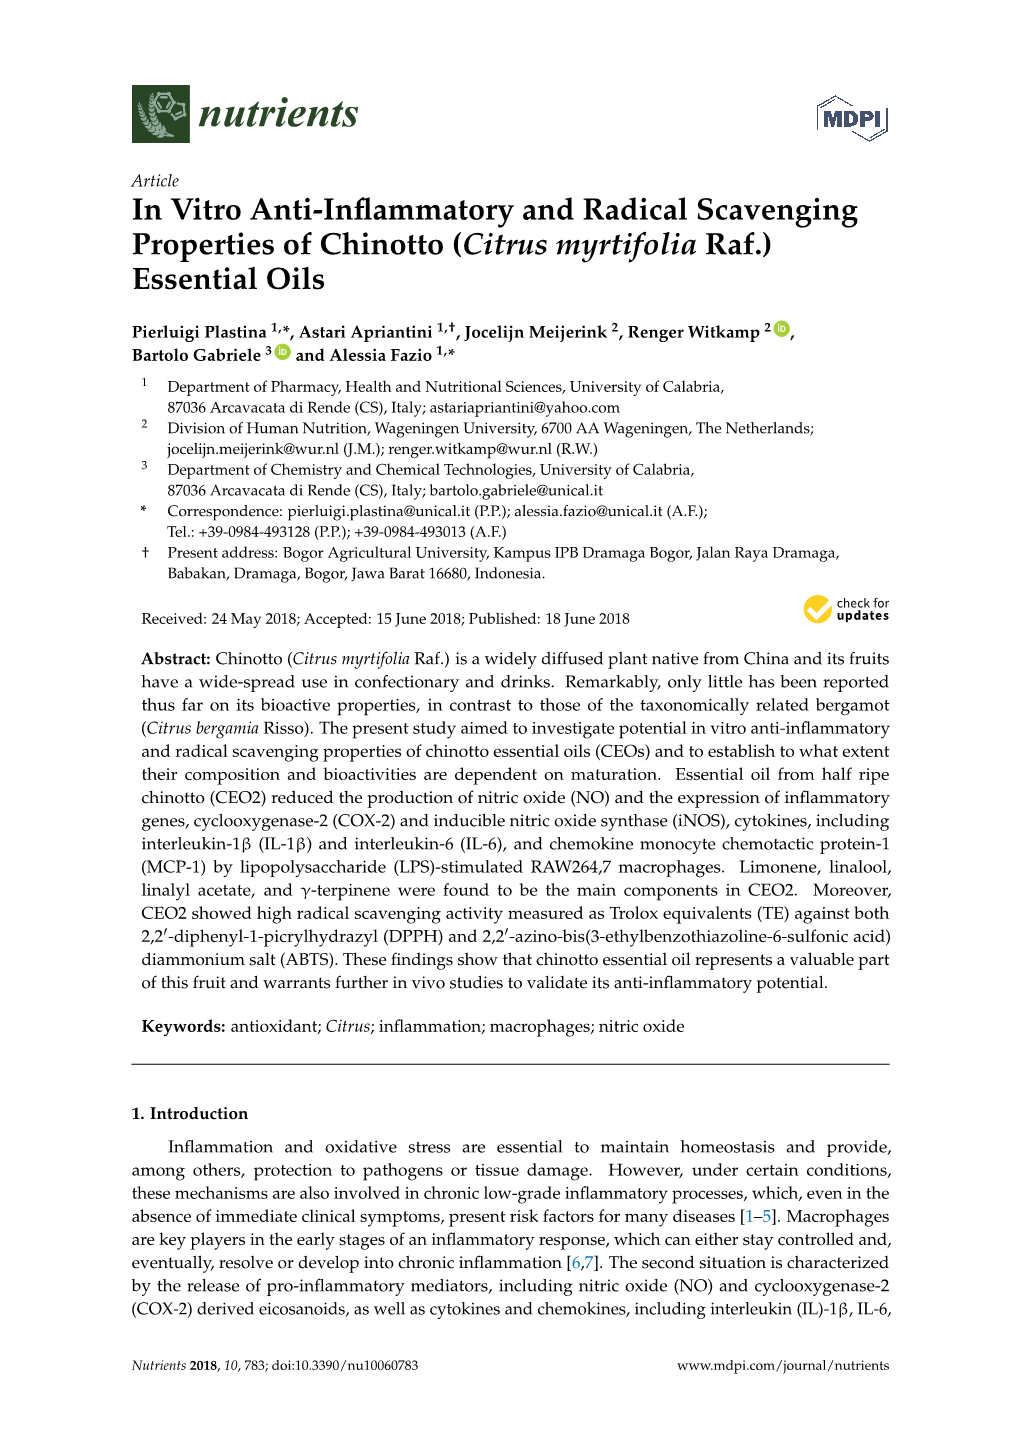 In Vitro Anti-Inflammatory and Radical Scavenging Properties of Chinotto